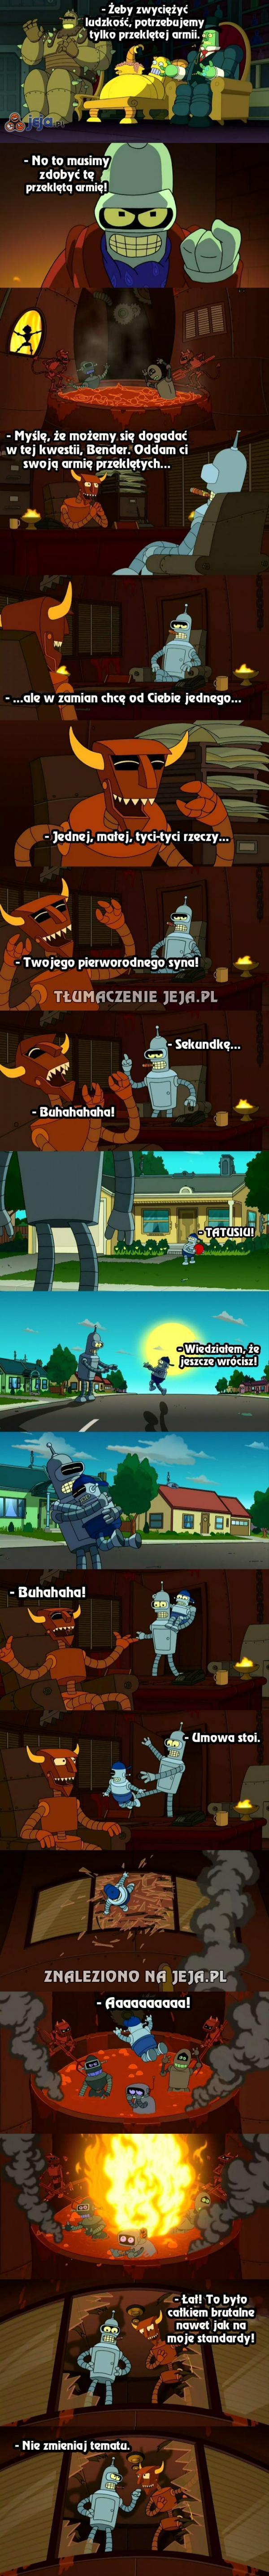 Bender - najtwardszy negocjator świata